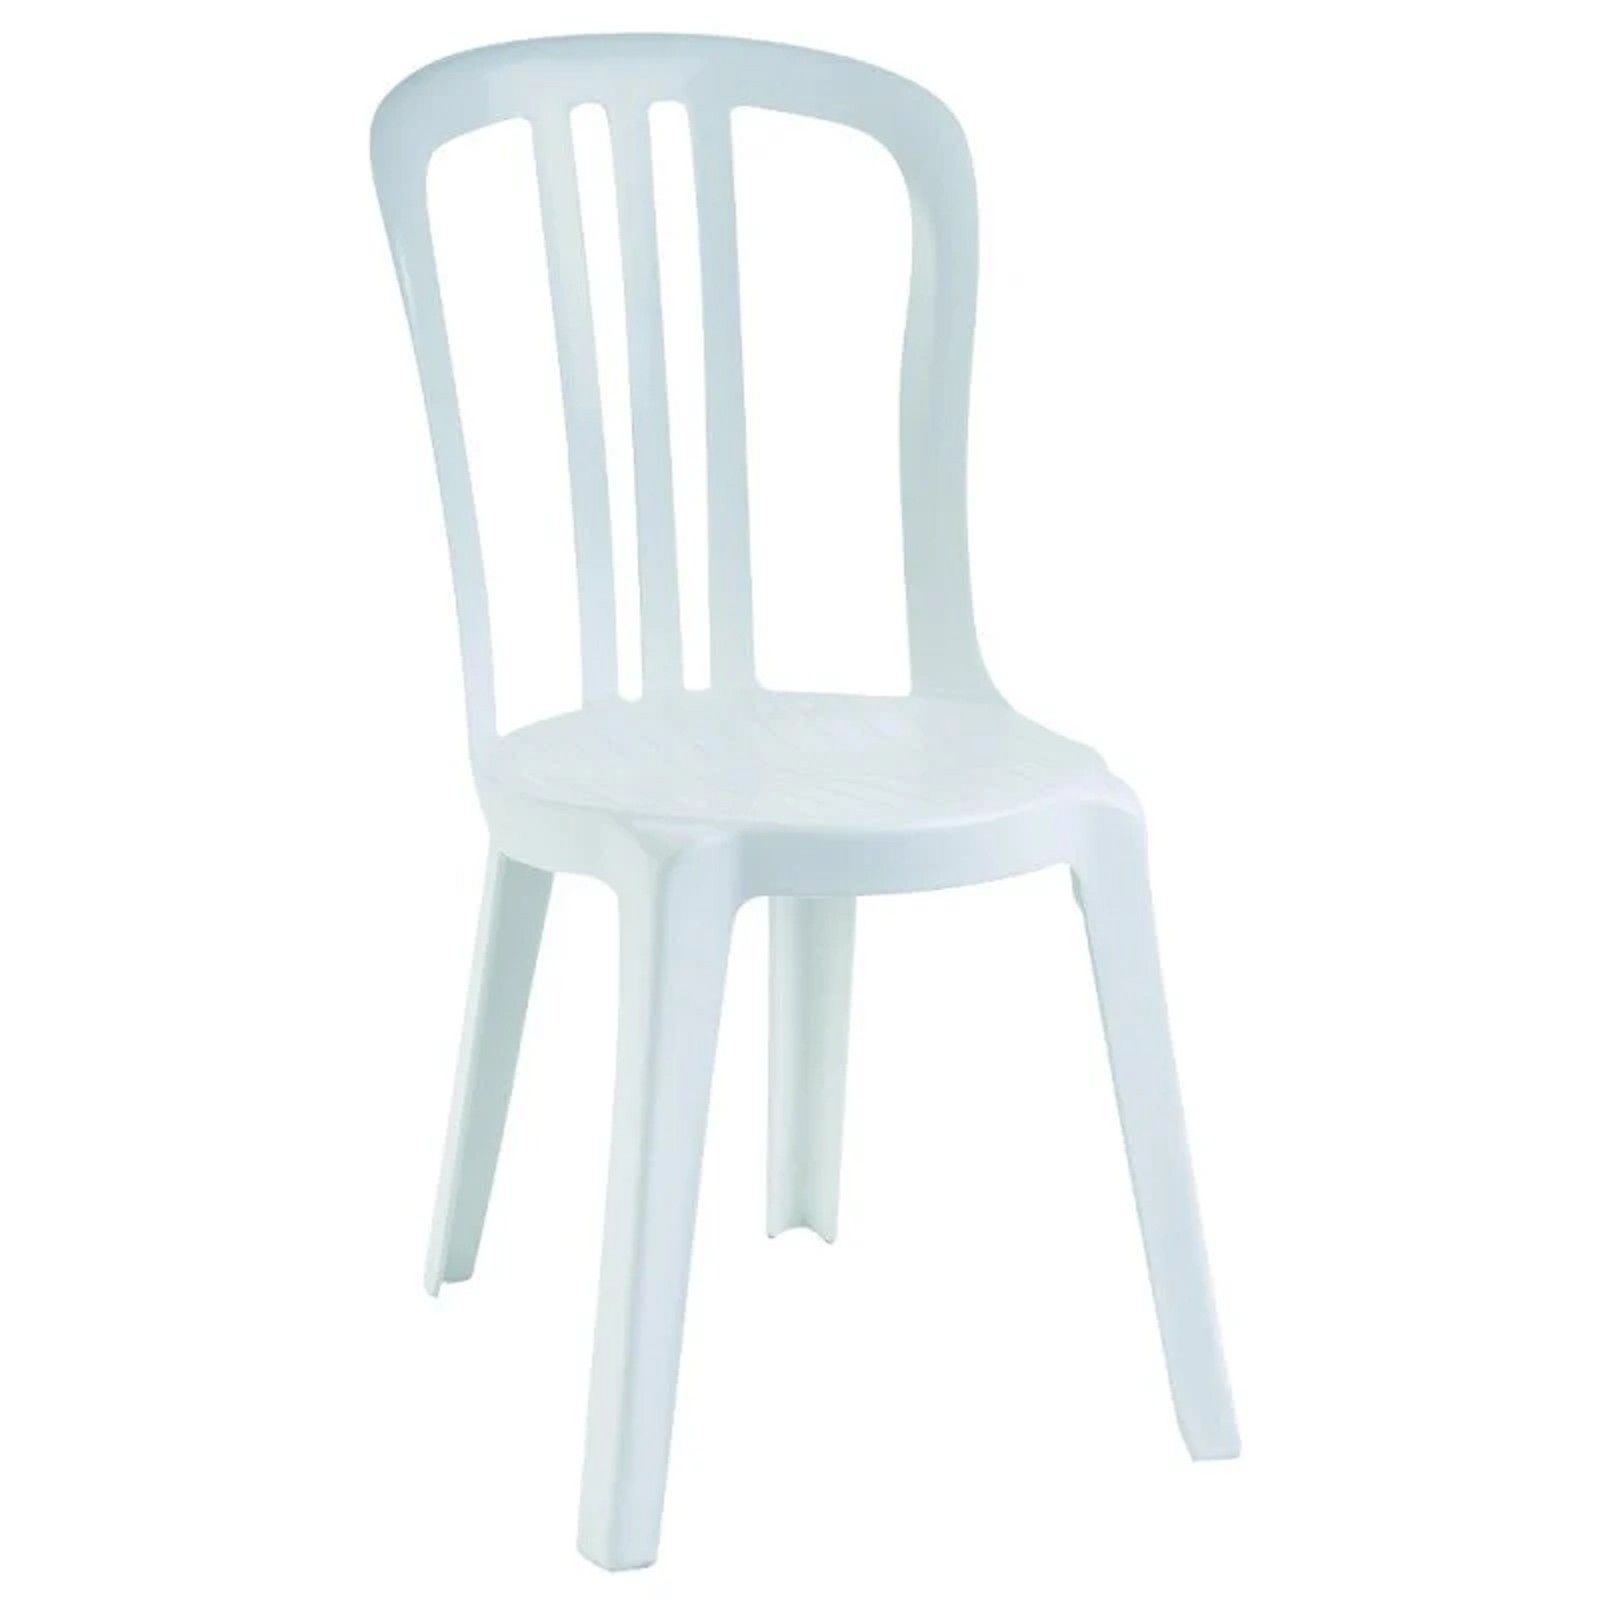 Location de chaise extérieure empilable en plastique blanc